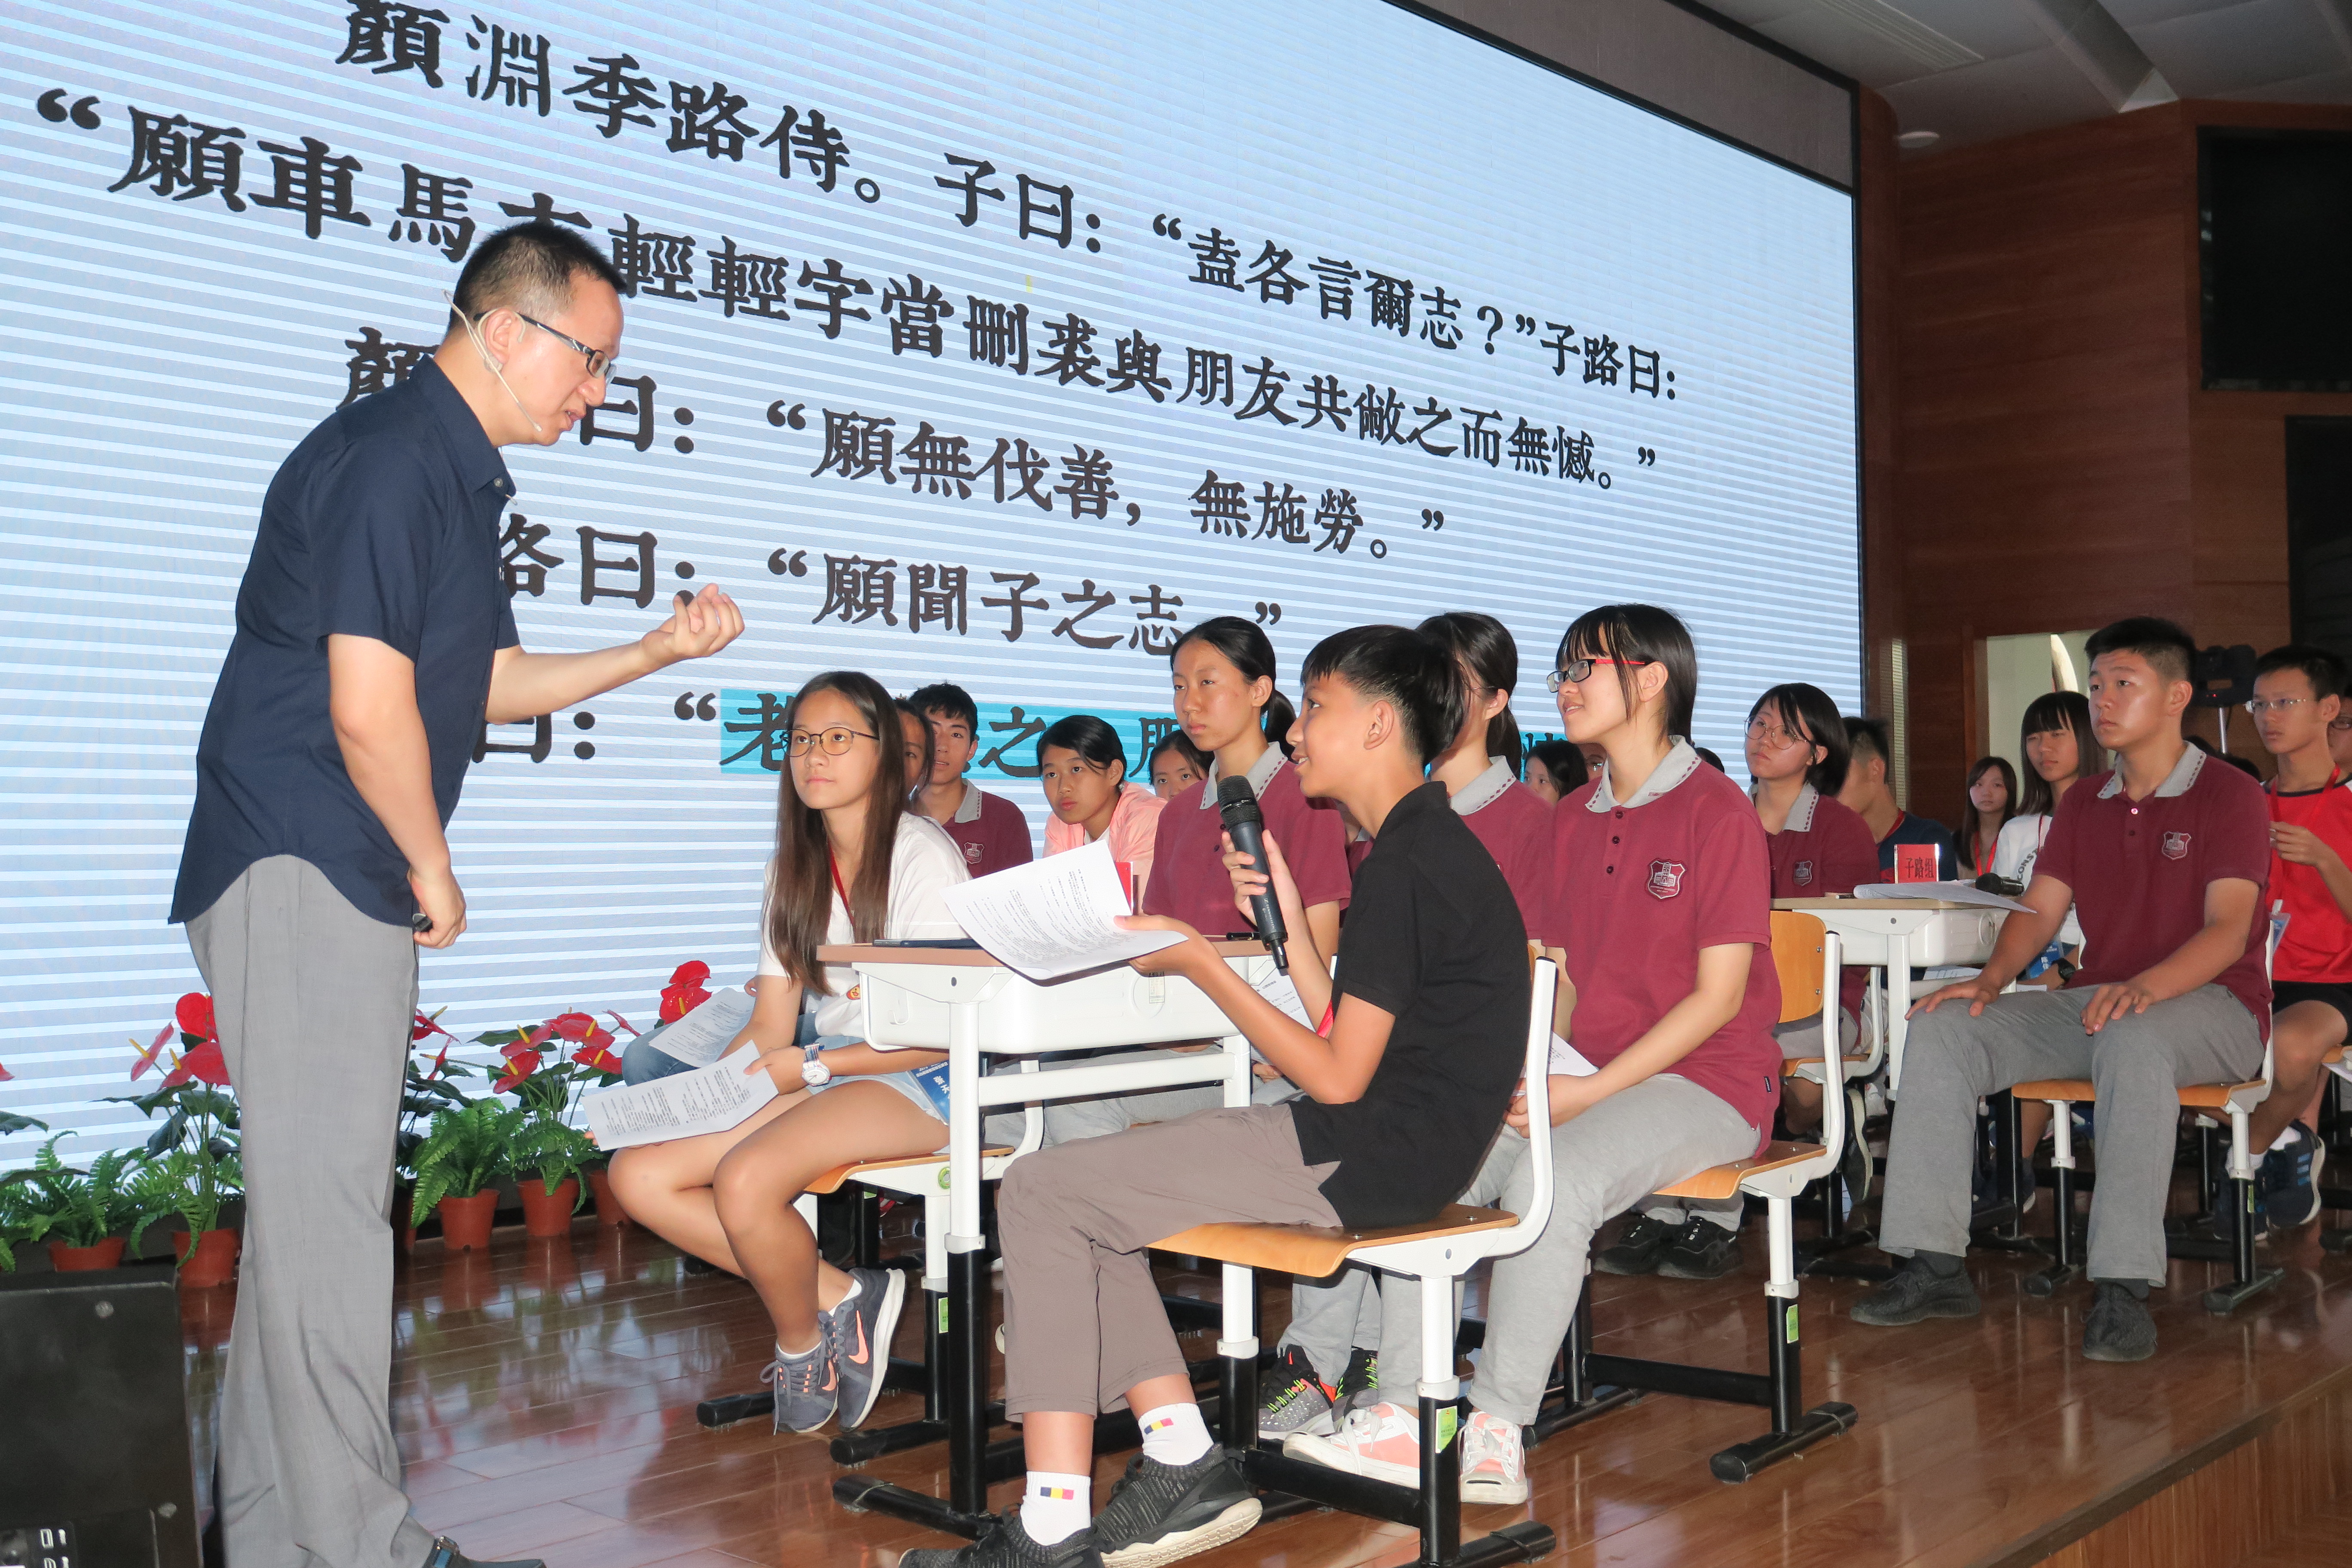 方麟副教授在工作坊上与台湾学生互动.JPG.jpg